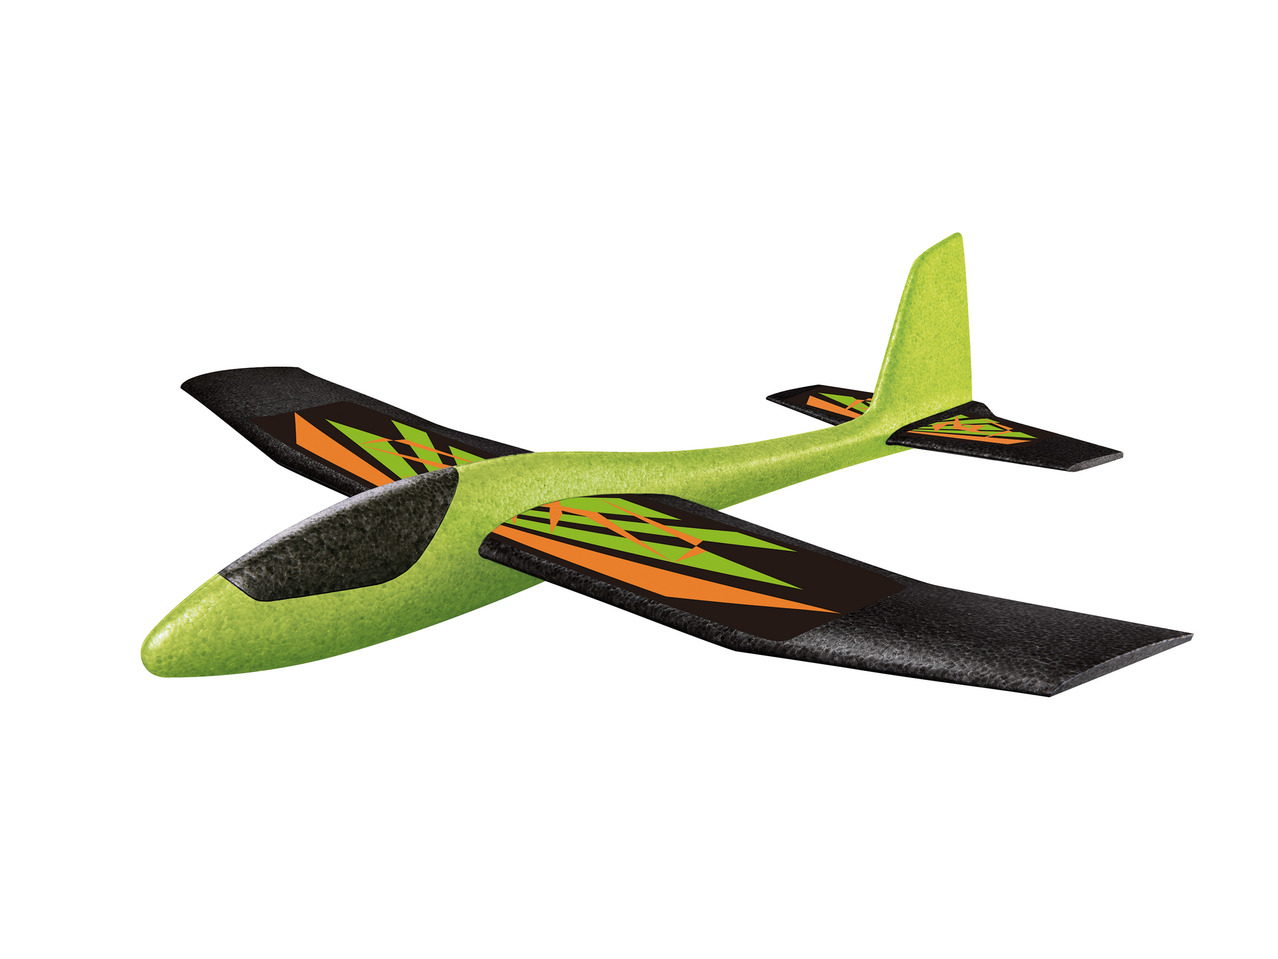 Playtive XL Glider Plane1